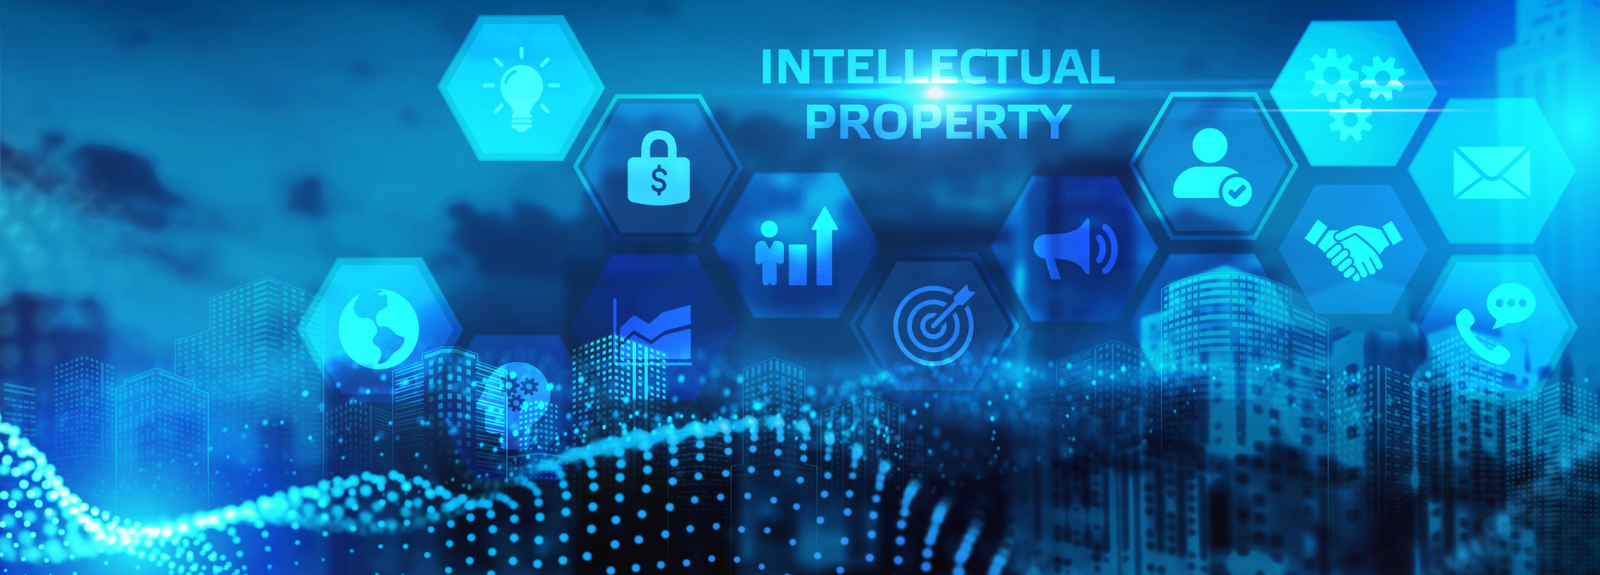 LLM Intellectual Property Law - Webpage Banner